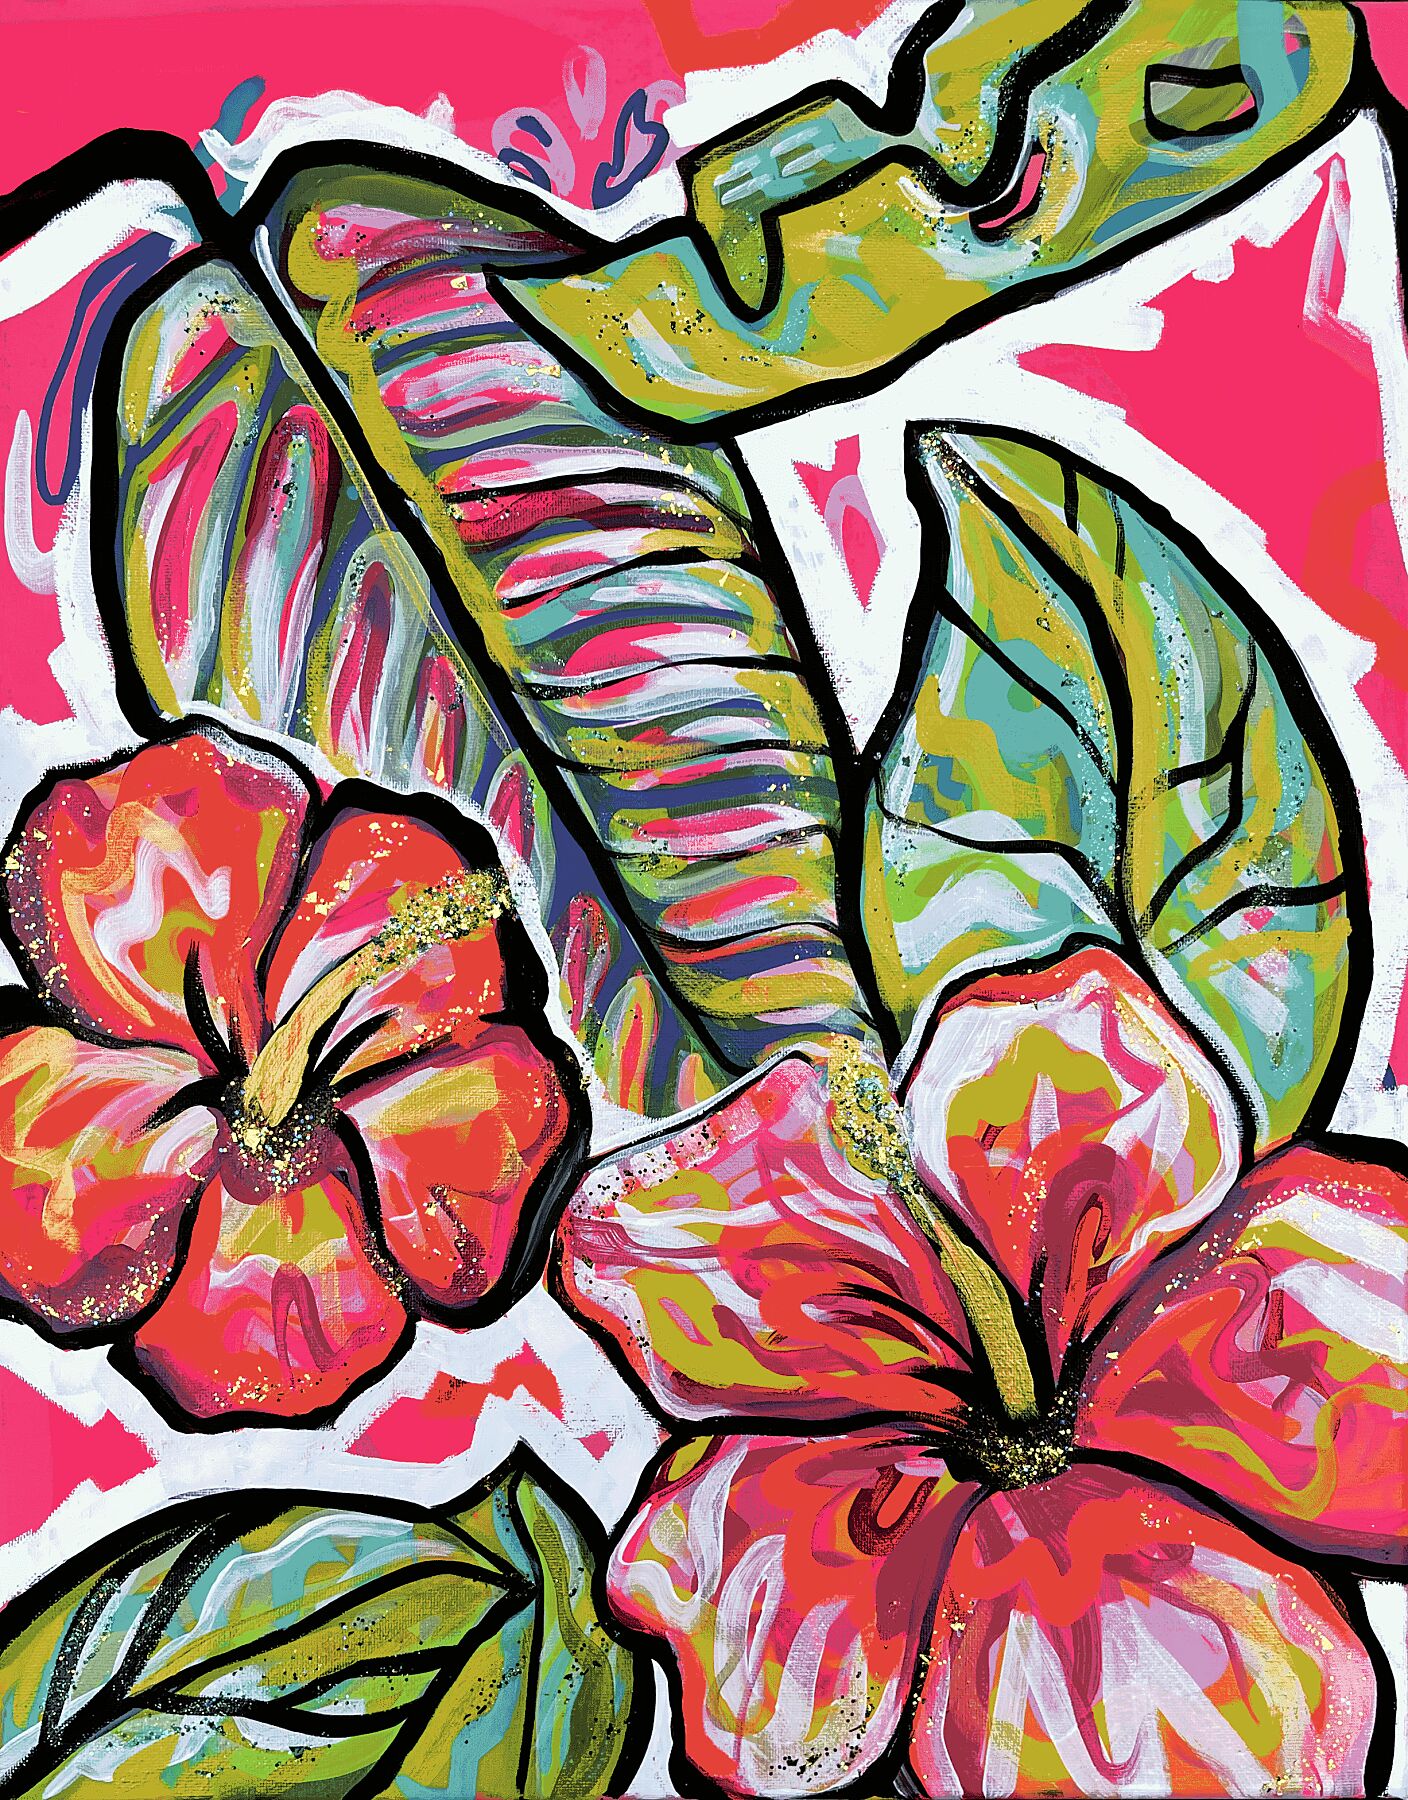 "hawaiian punch" prints